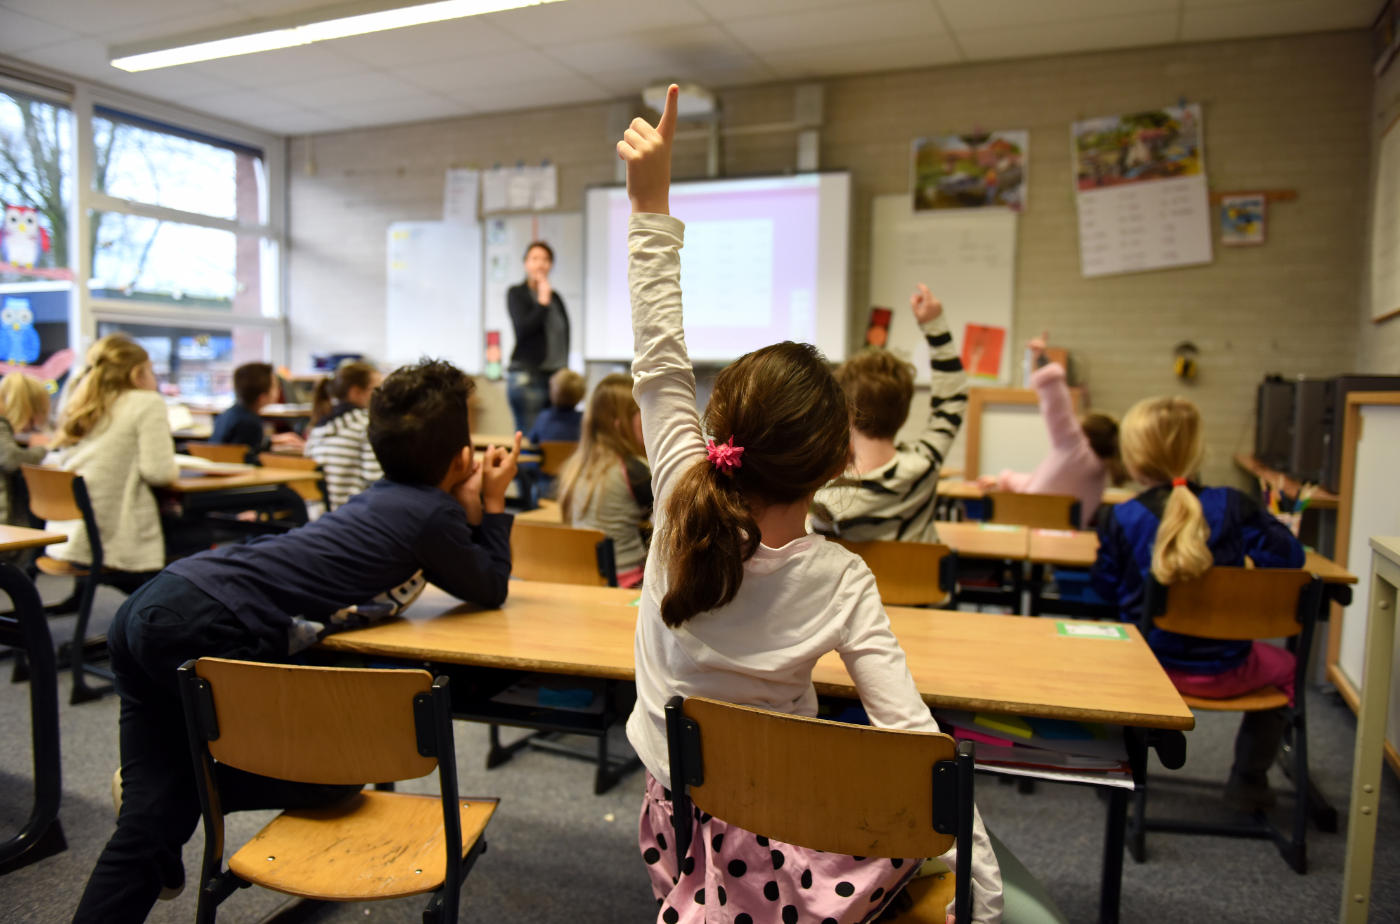 In den Schulen des Lahn-Dill-Kreises soll der Unterricht weitgehend normal stattfinden können. Die Räume sollen normal beheizt werden. Foto: Arthur Krijgsman/Pexels via canva.com